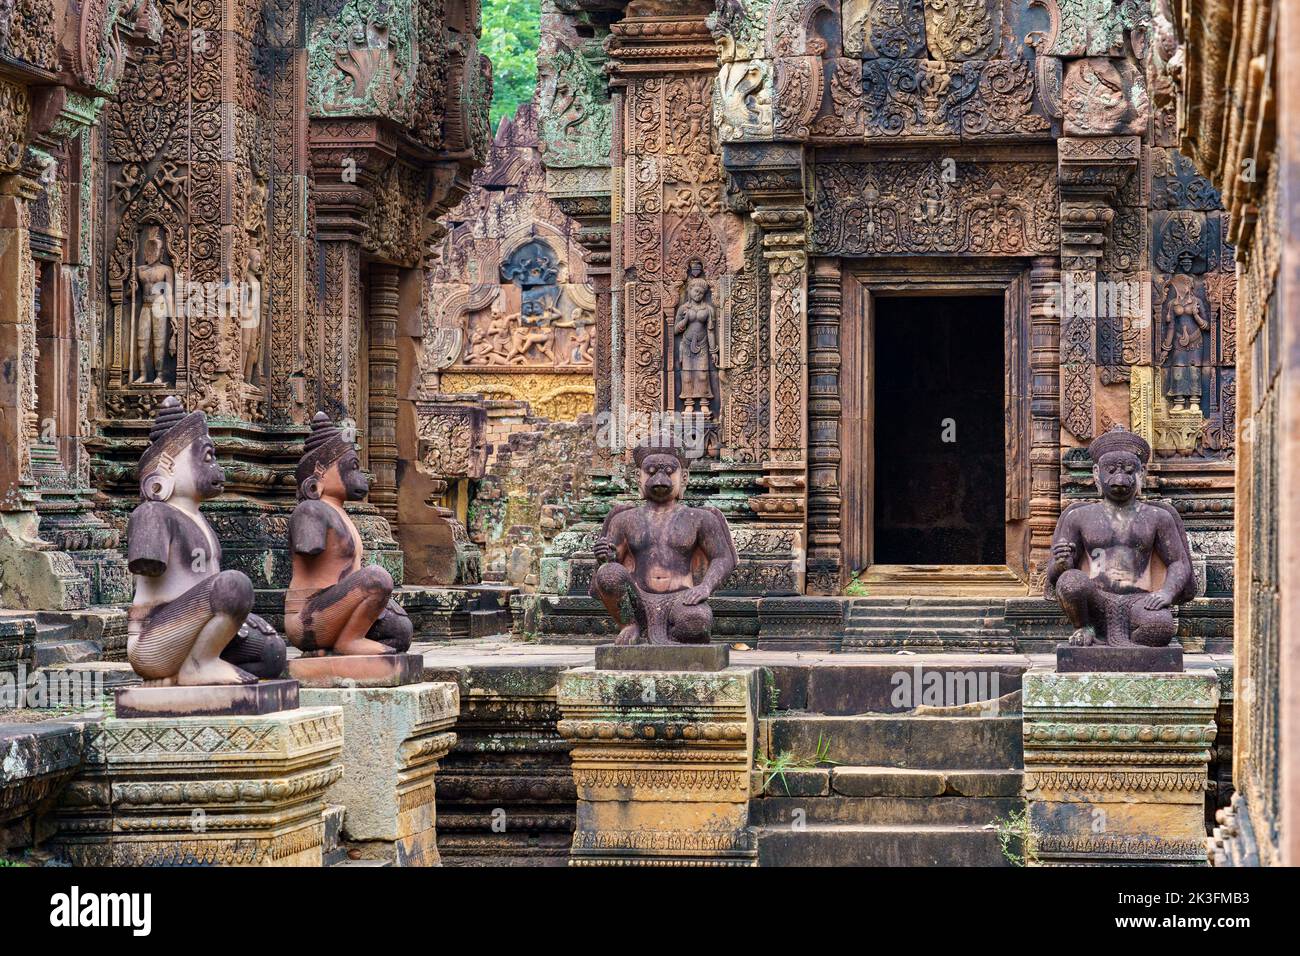 Camboya. Provincia de Siem Reap. El parque arqueológico de Angkor. Banteay Srei. Templo hindú del siglo 10th dedicado a Shiva Foto de stock